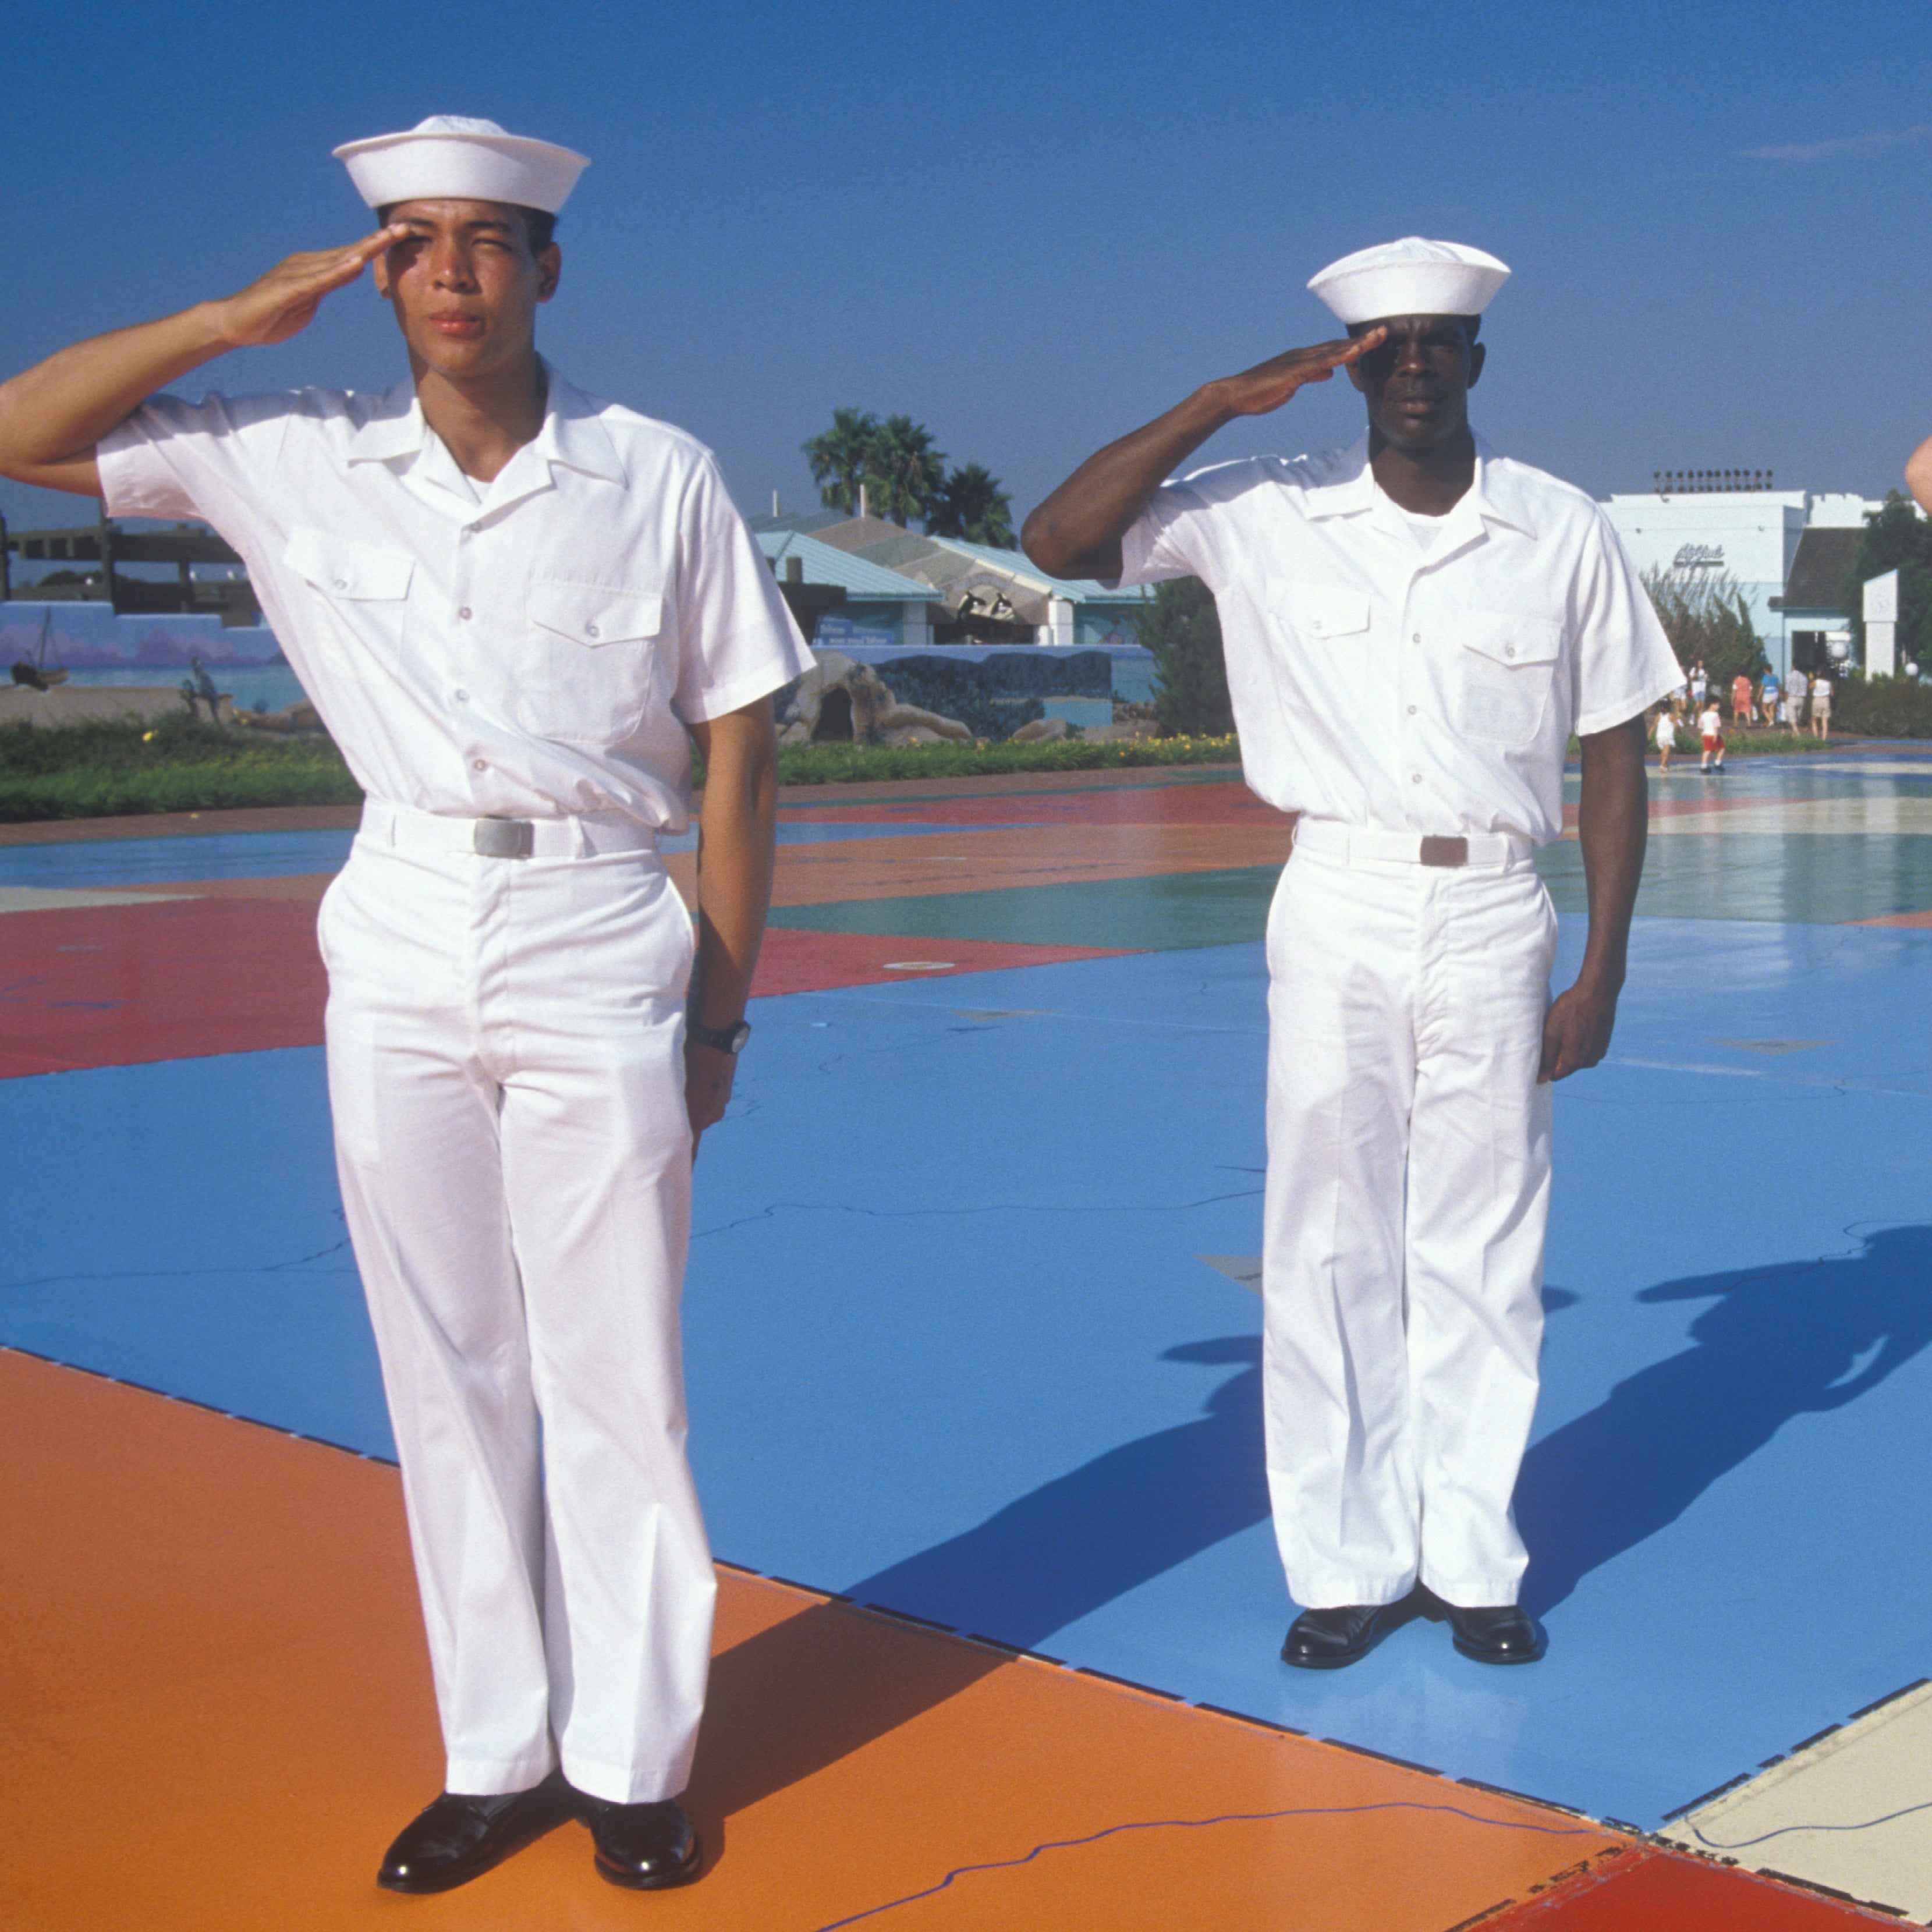 Vintage Black Sailor Photos In Honor Of Fleet Week
